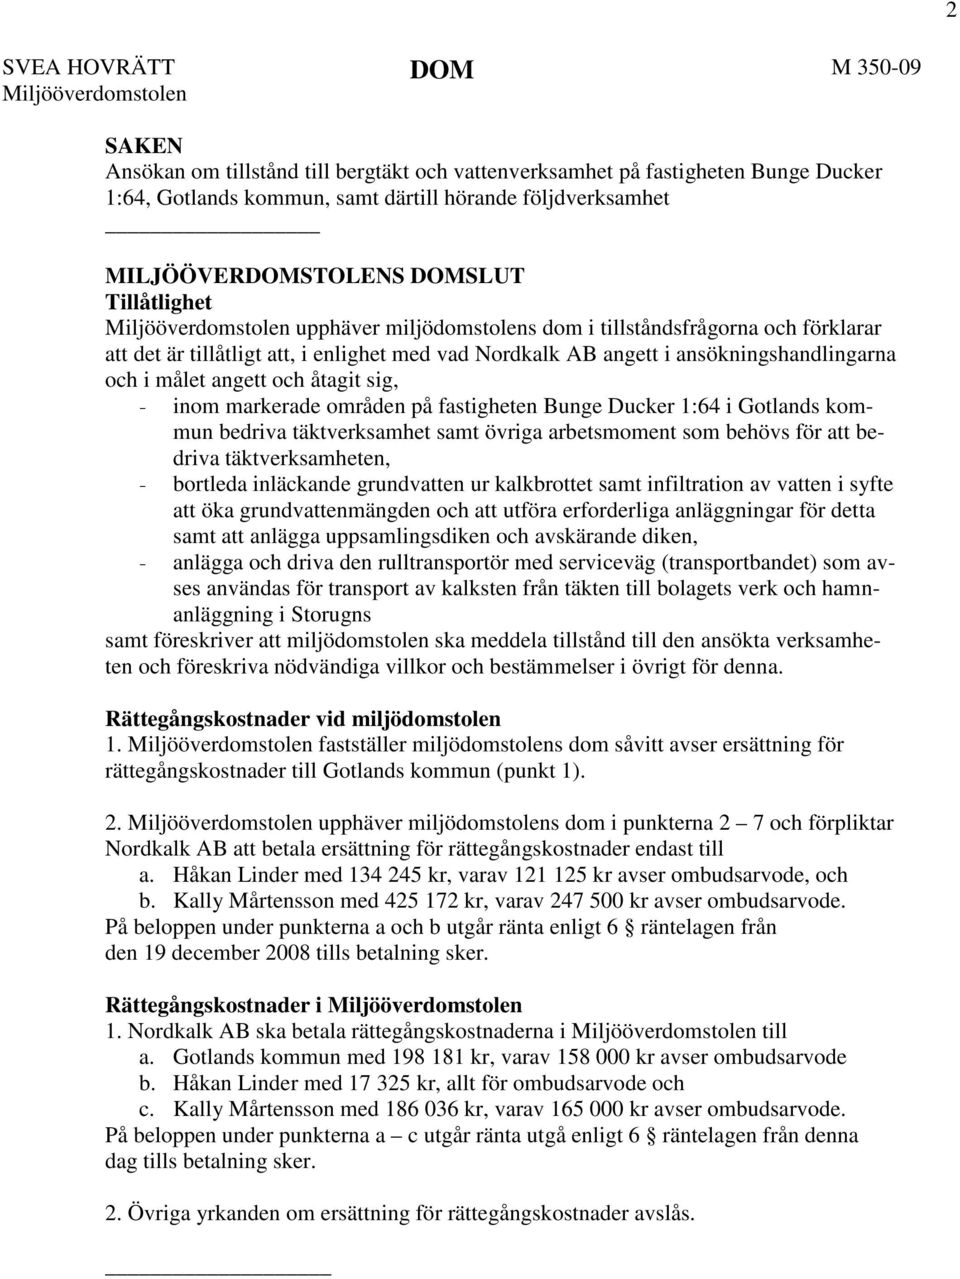 ansökningshandlingarna och i målet angett och åtagit sig, - inom markerade områden på fastigheten Bunge Ducker 1:64 i Gotlands kommun bedriva täktverksamhet samt övriga arbetsmoment som behövs för